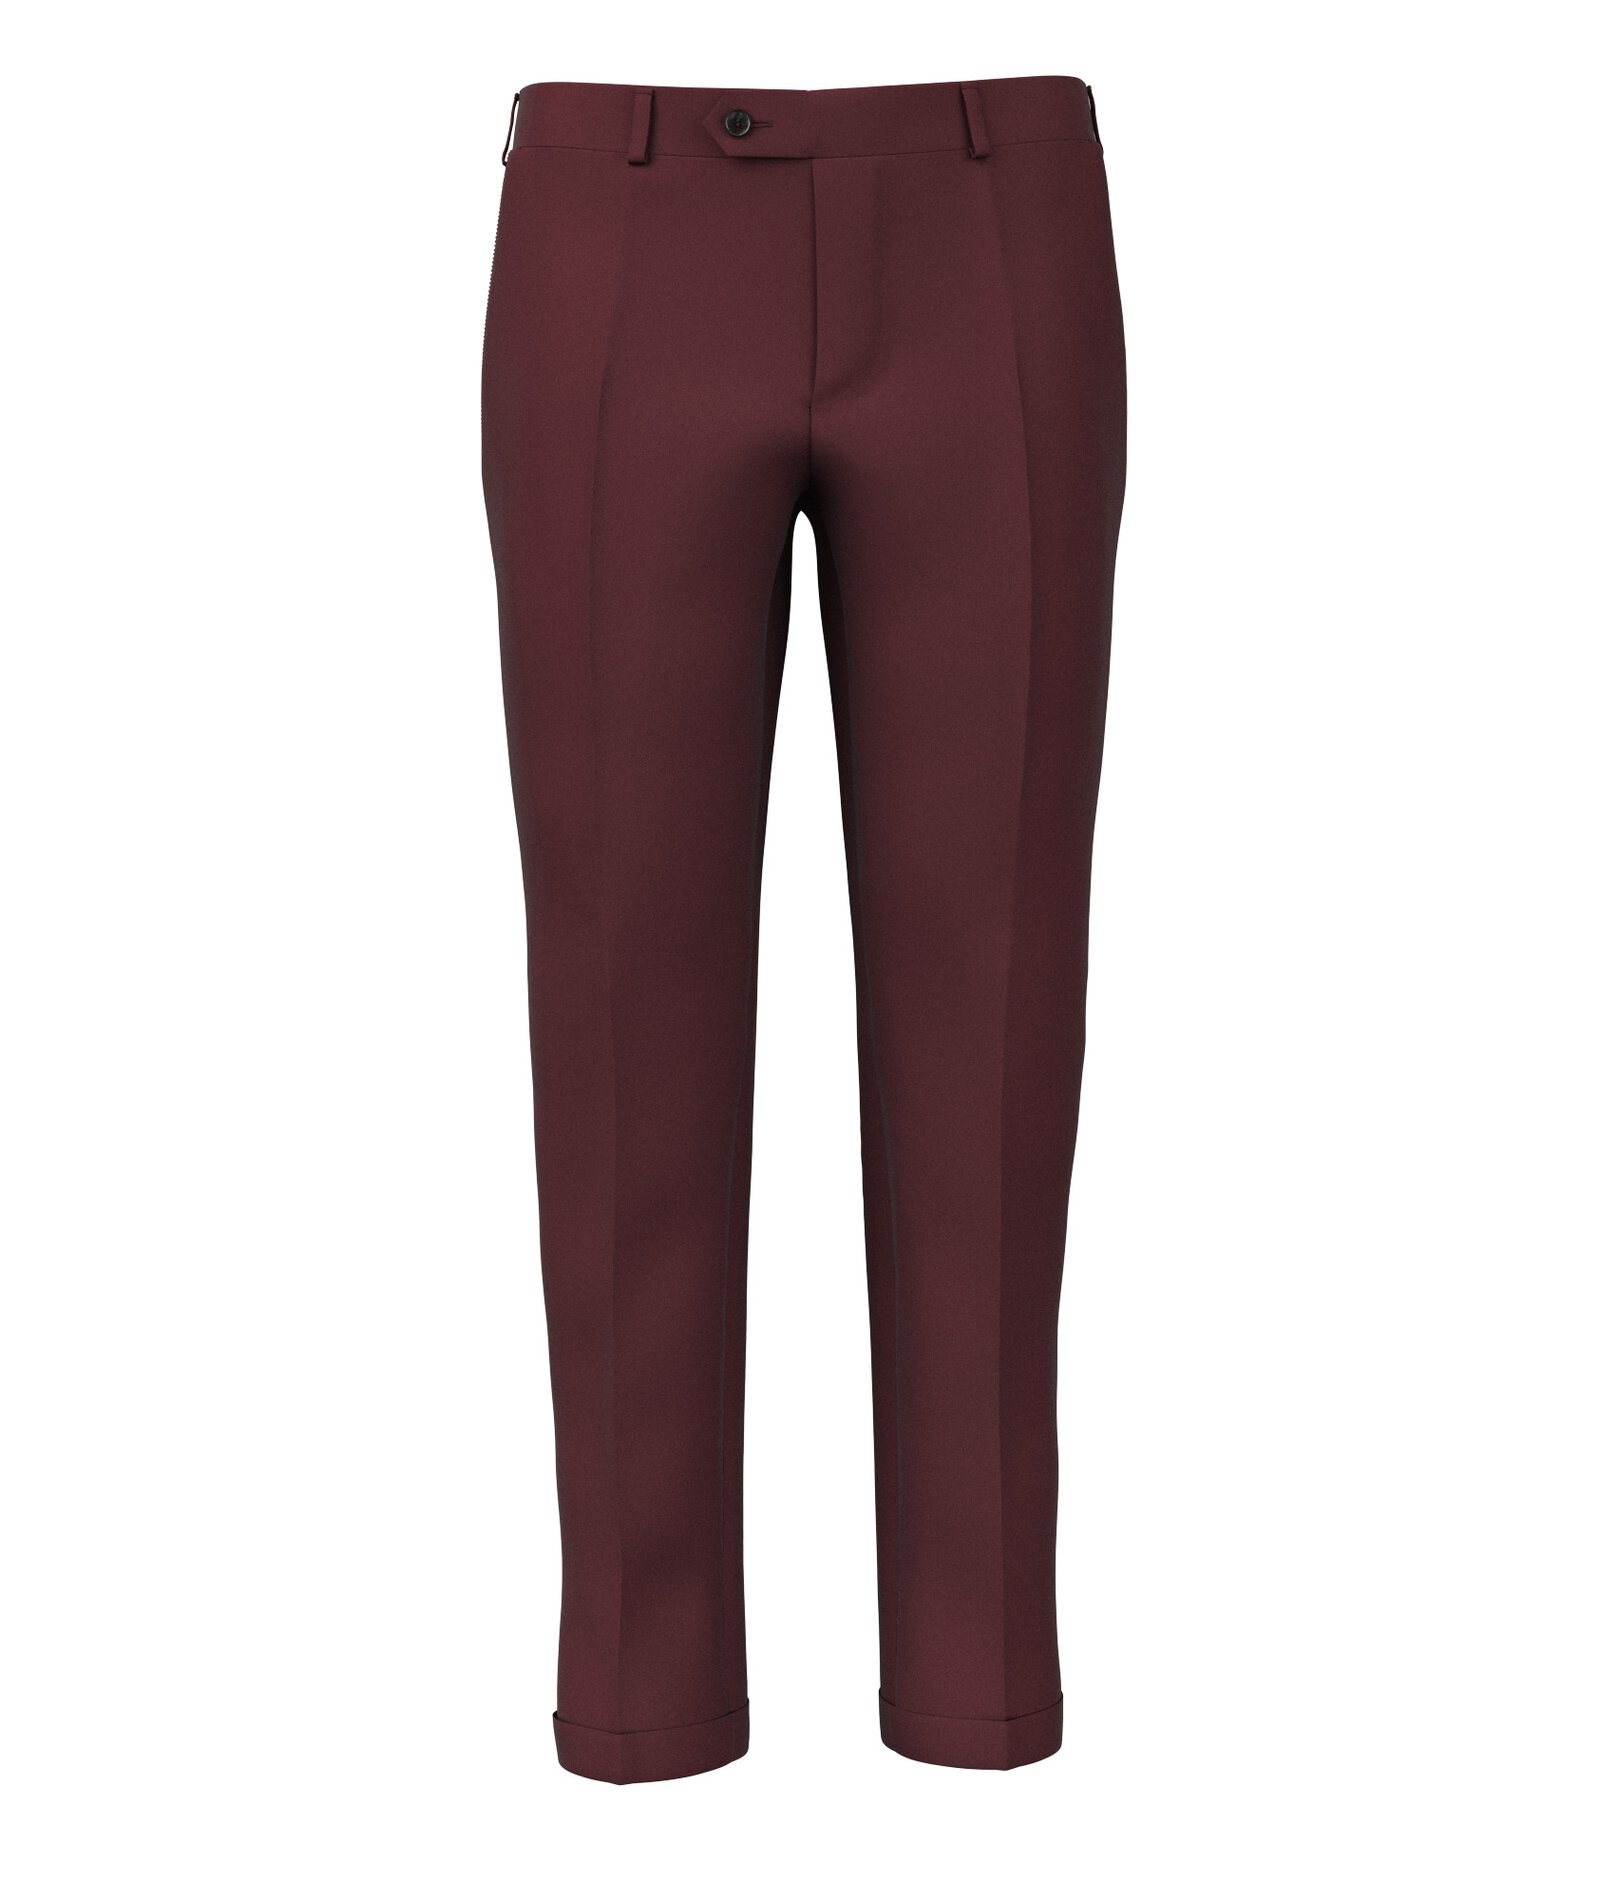 Image of Pantaloni da uomo su misura, Reda, Rosso in Twill di Lana, Quattro Stagioni | Lanieri